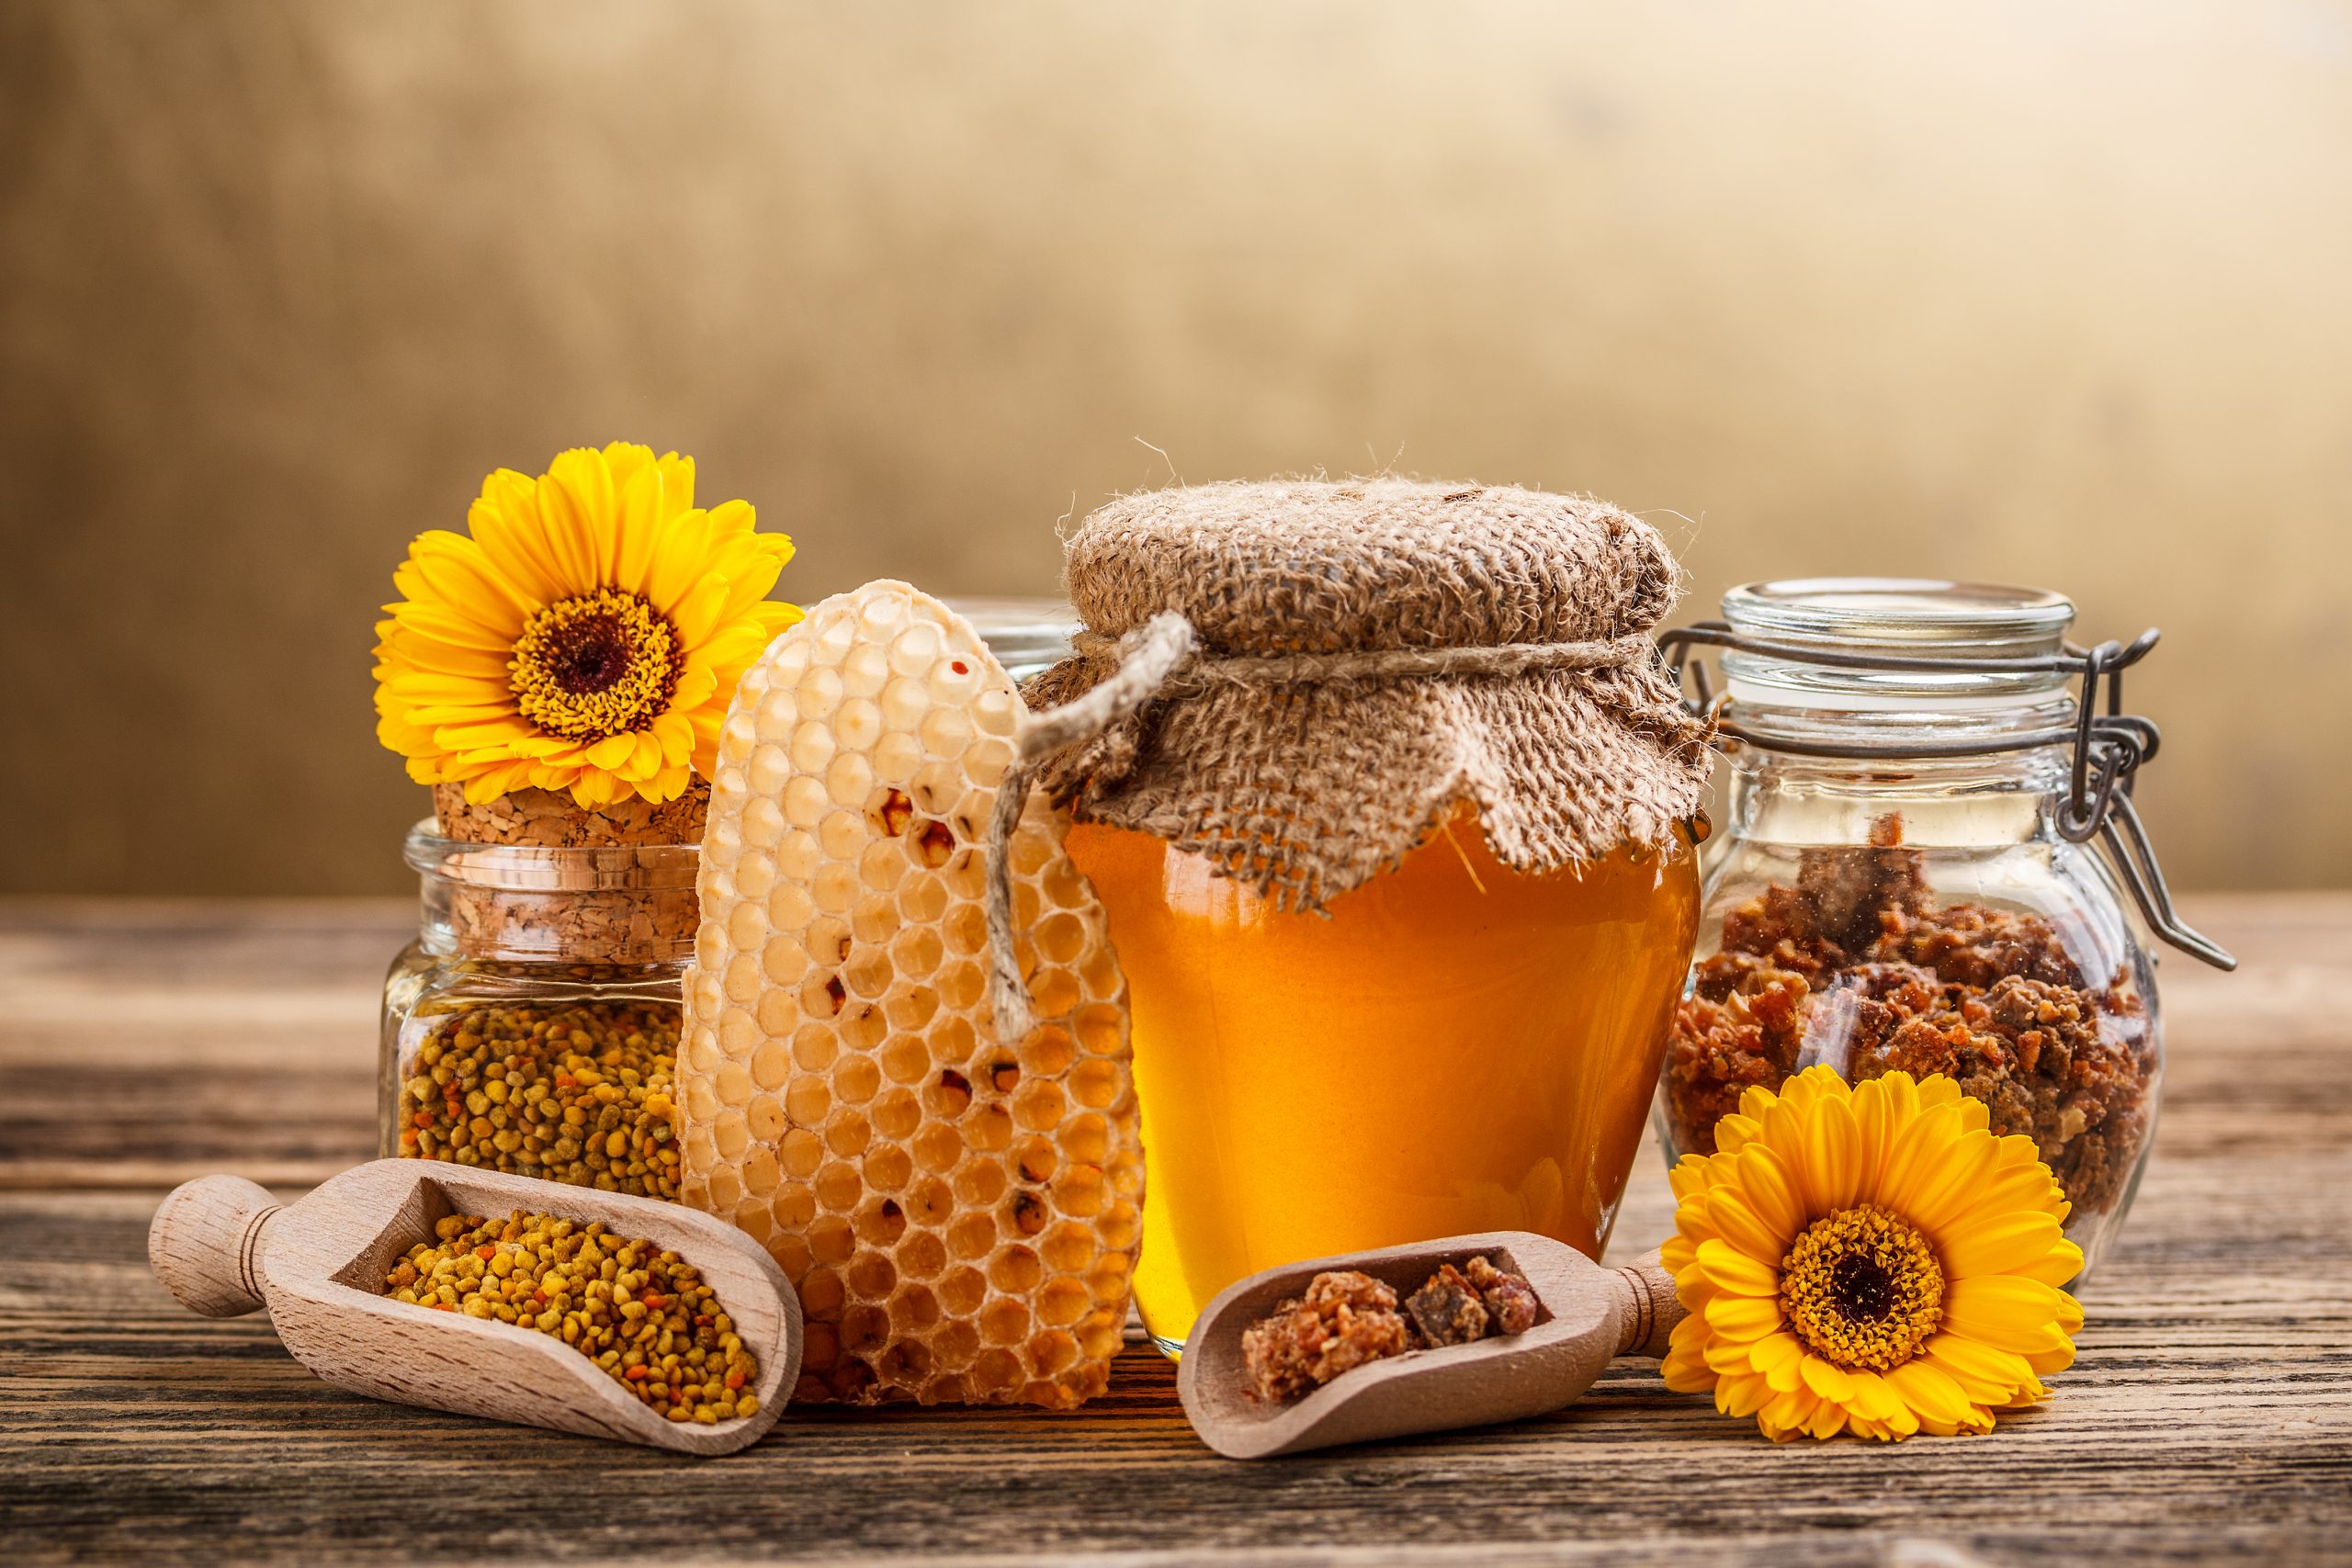 「夏バテに効くハチミツの活用法」 - はちみつ大学